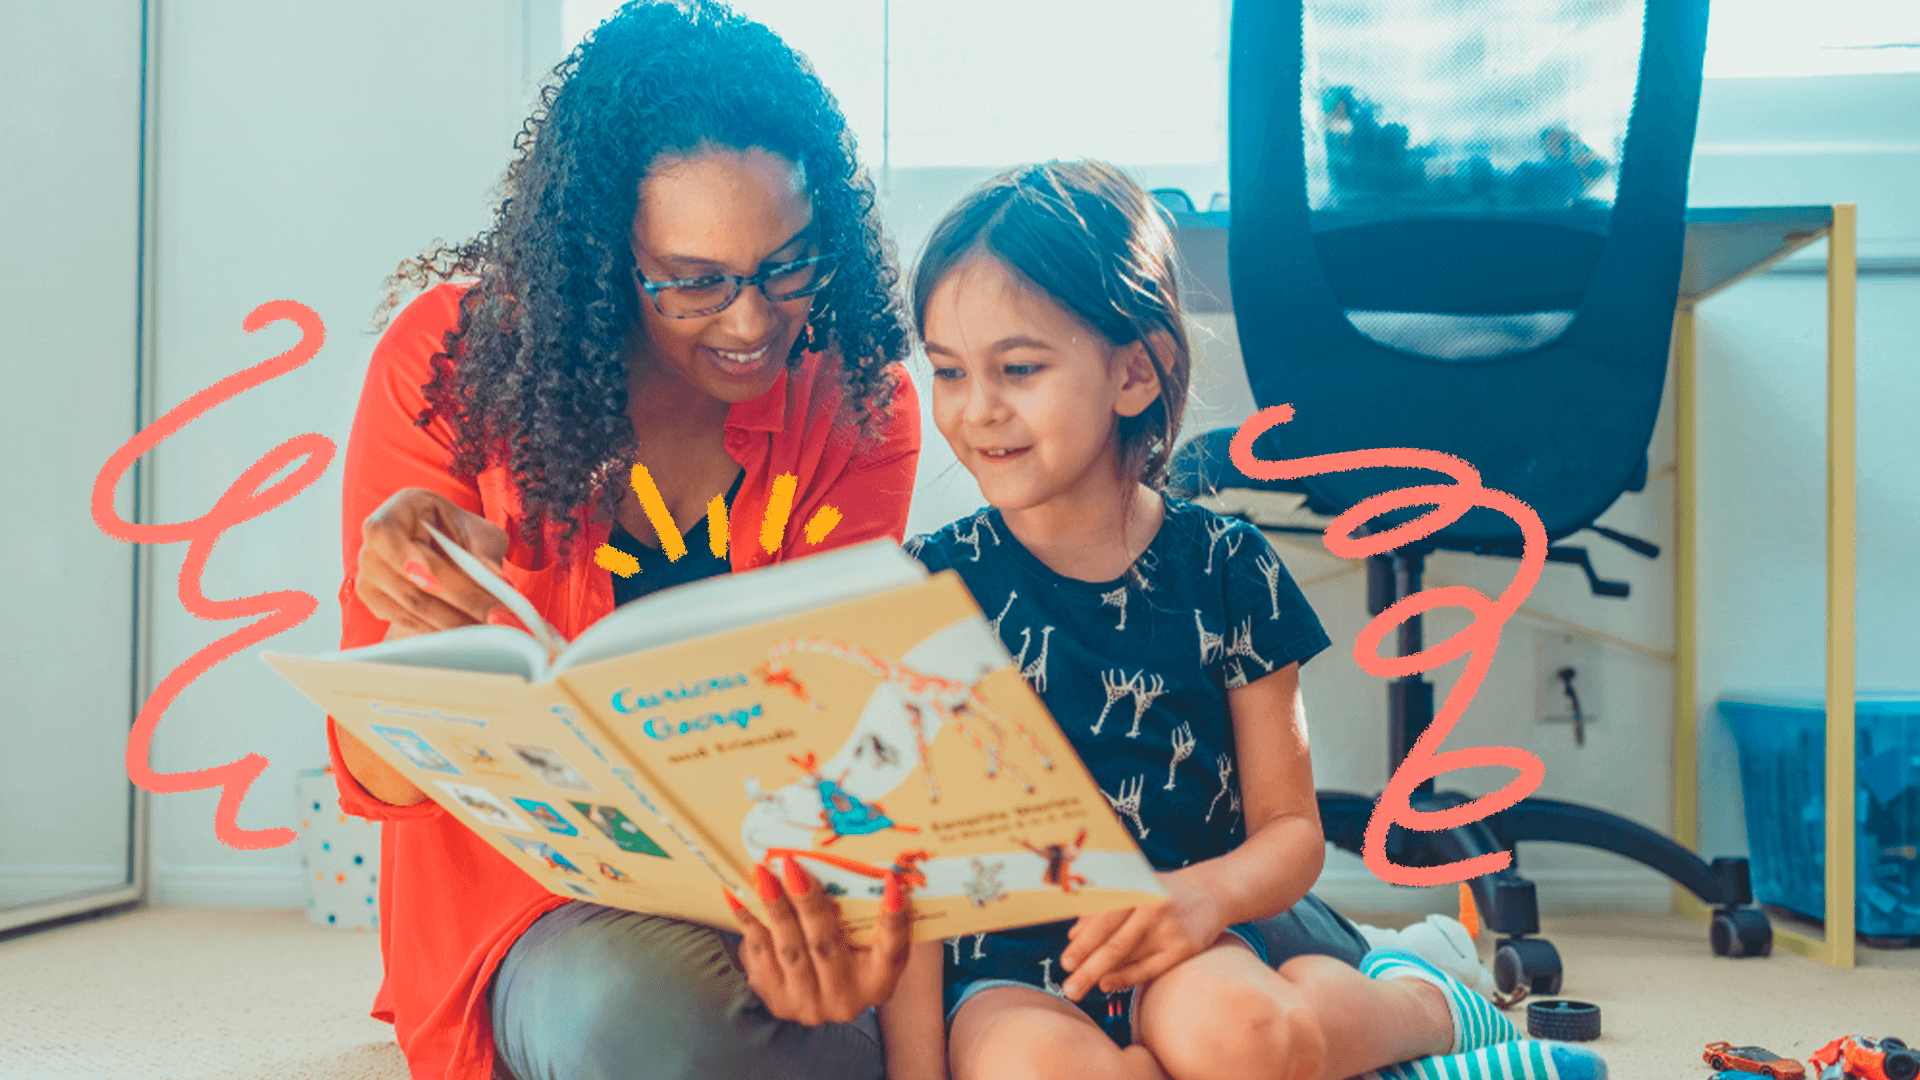 imagem ilustra matéria sobre hábitos de leitura entre as crianças e mostra uma mulher negra, de cabelos cacheados e óculos, sentada ao lado de uma menina branca, de cabelos lisos, que segura um livro na mão.